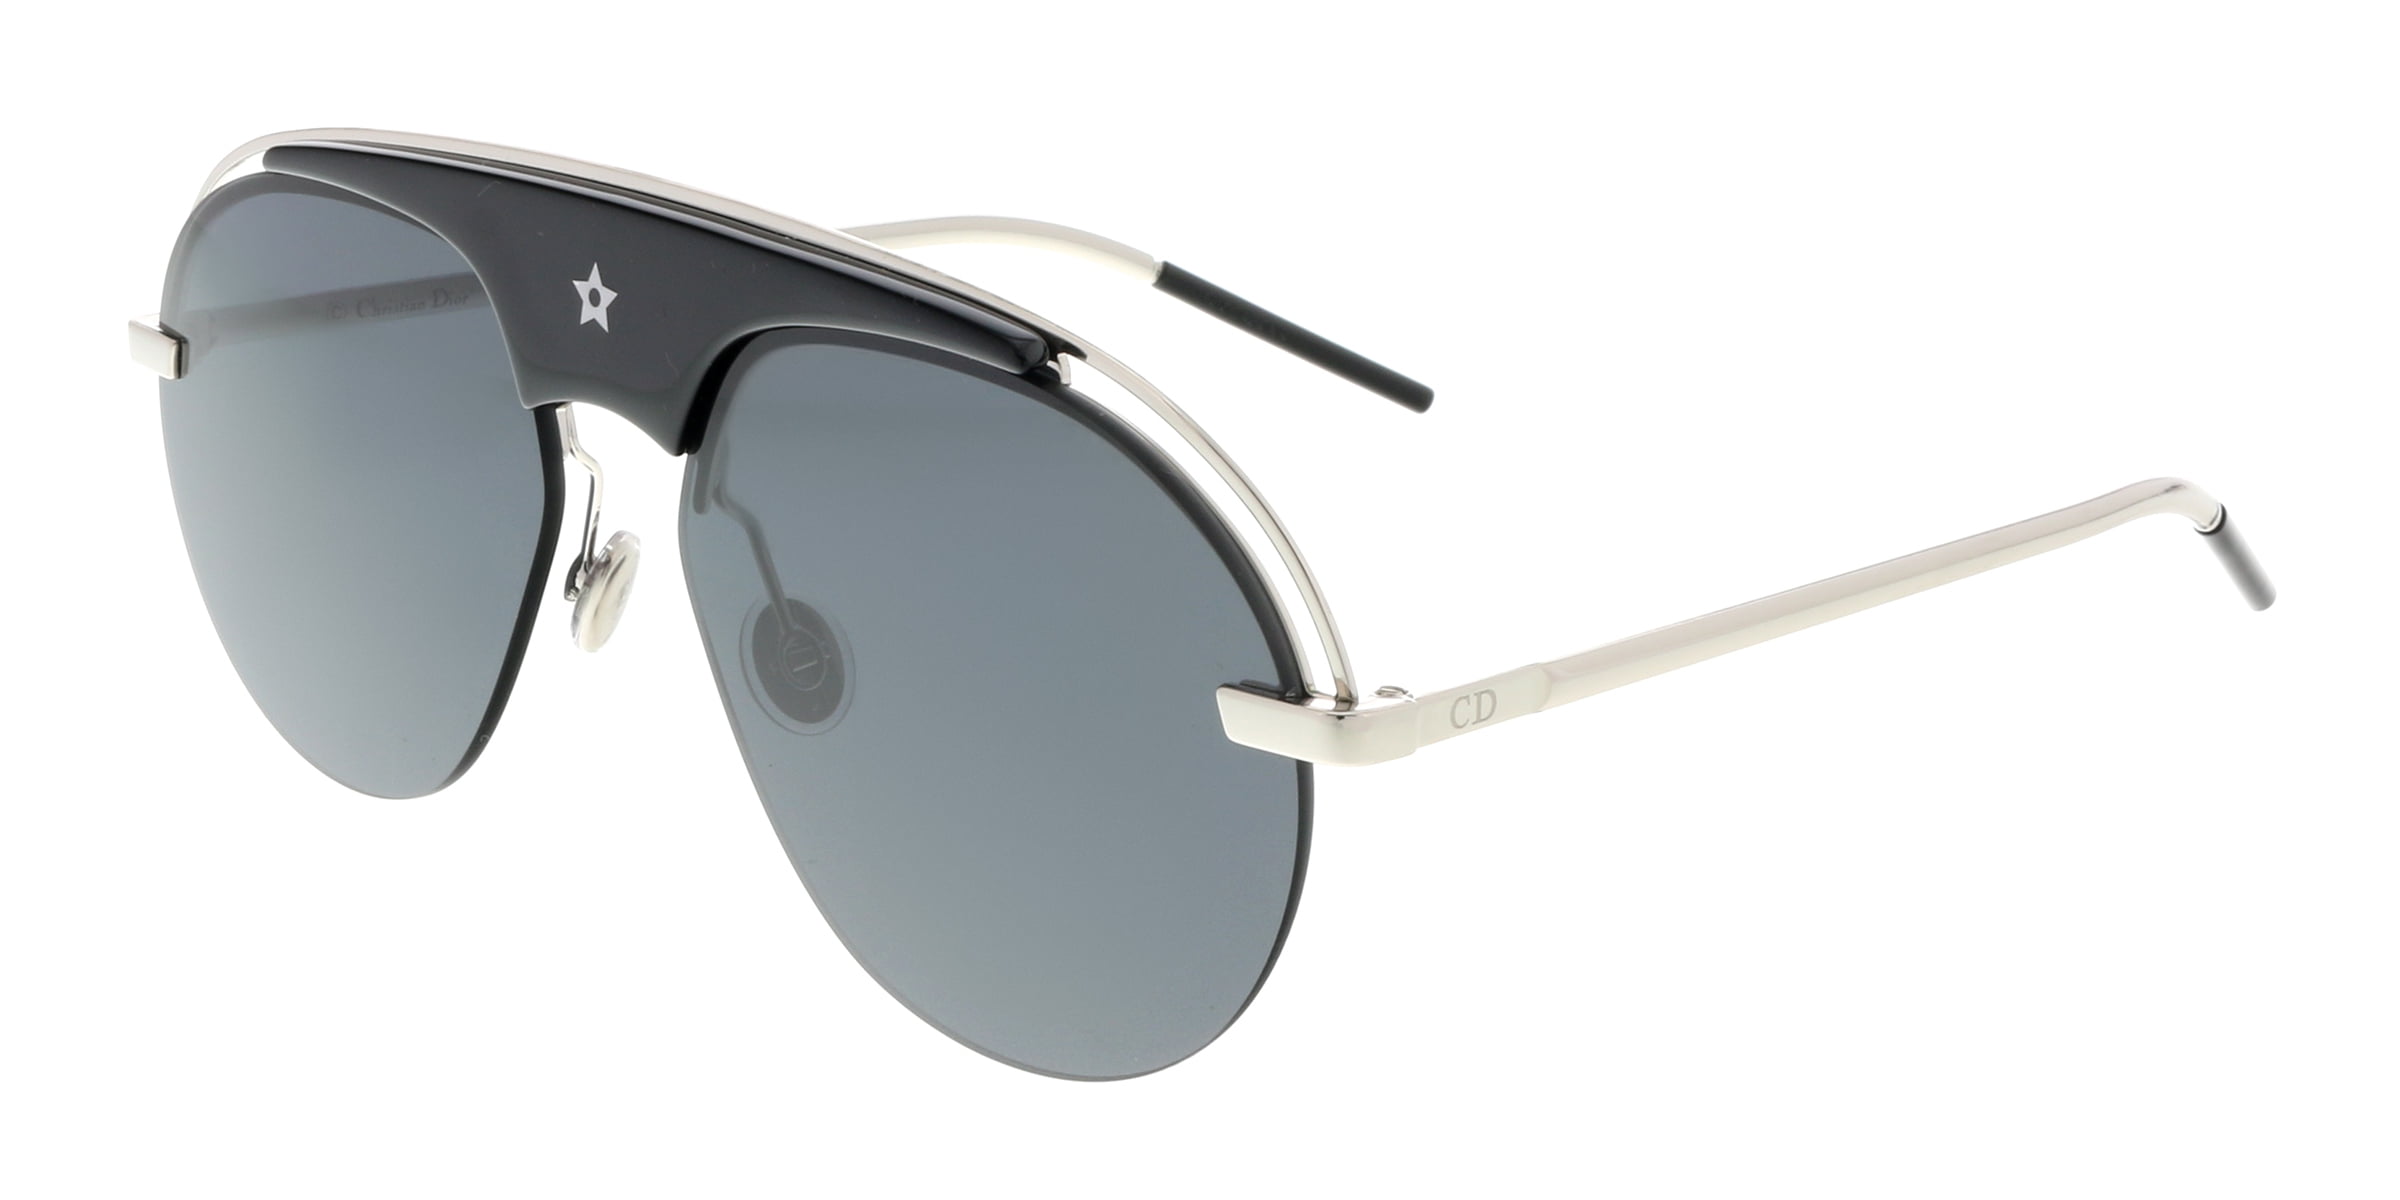 Dior - dio(r)evolution 58mm pilot sunglasses - Walmart.com - Walmart.com